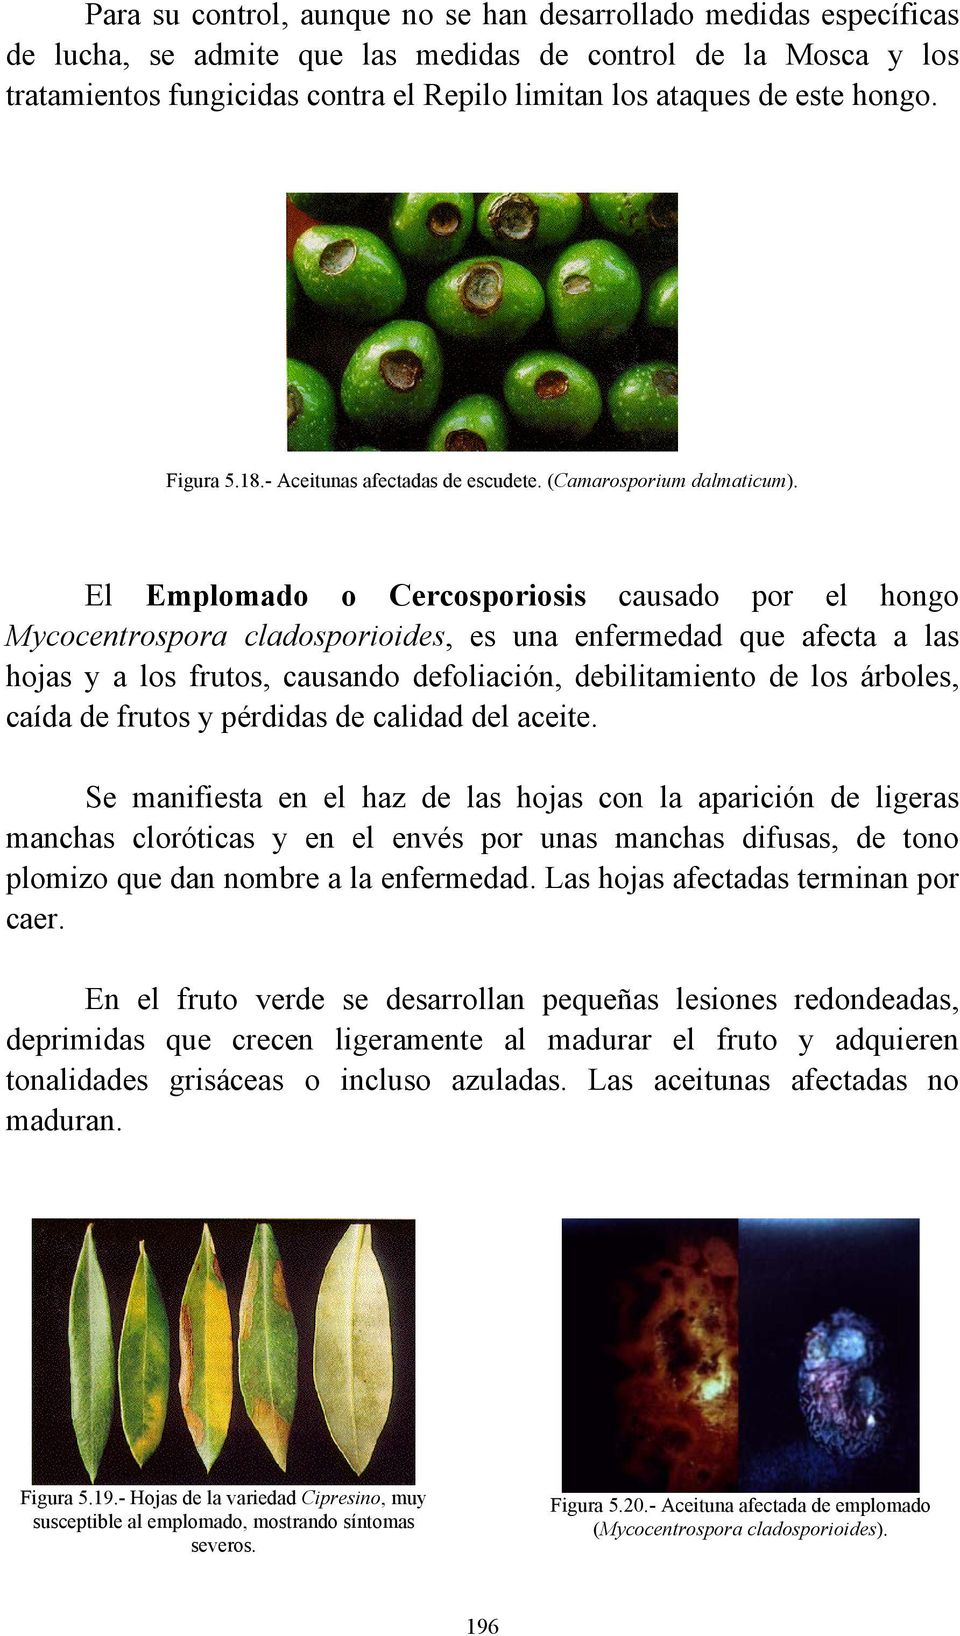 El Emplomado o Cercosporiosis causado por el hongo Mycocentrospora cladosporioides, es una enfermedad que afecta a las hojas y a los frutos, causando defoliación, debilitamiento de los árboles, caída